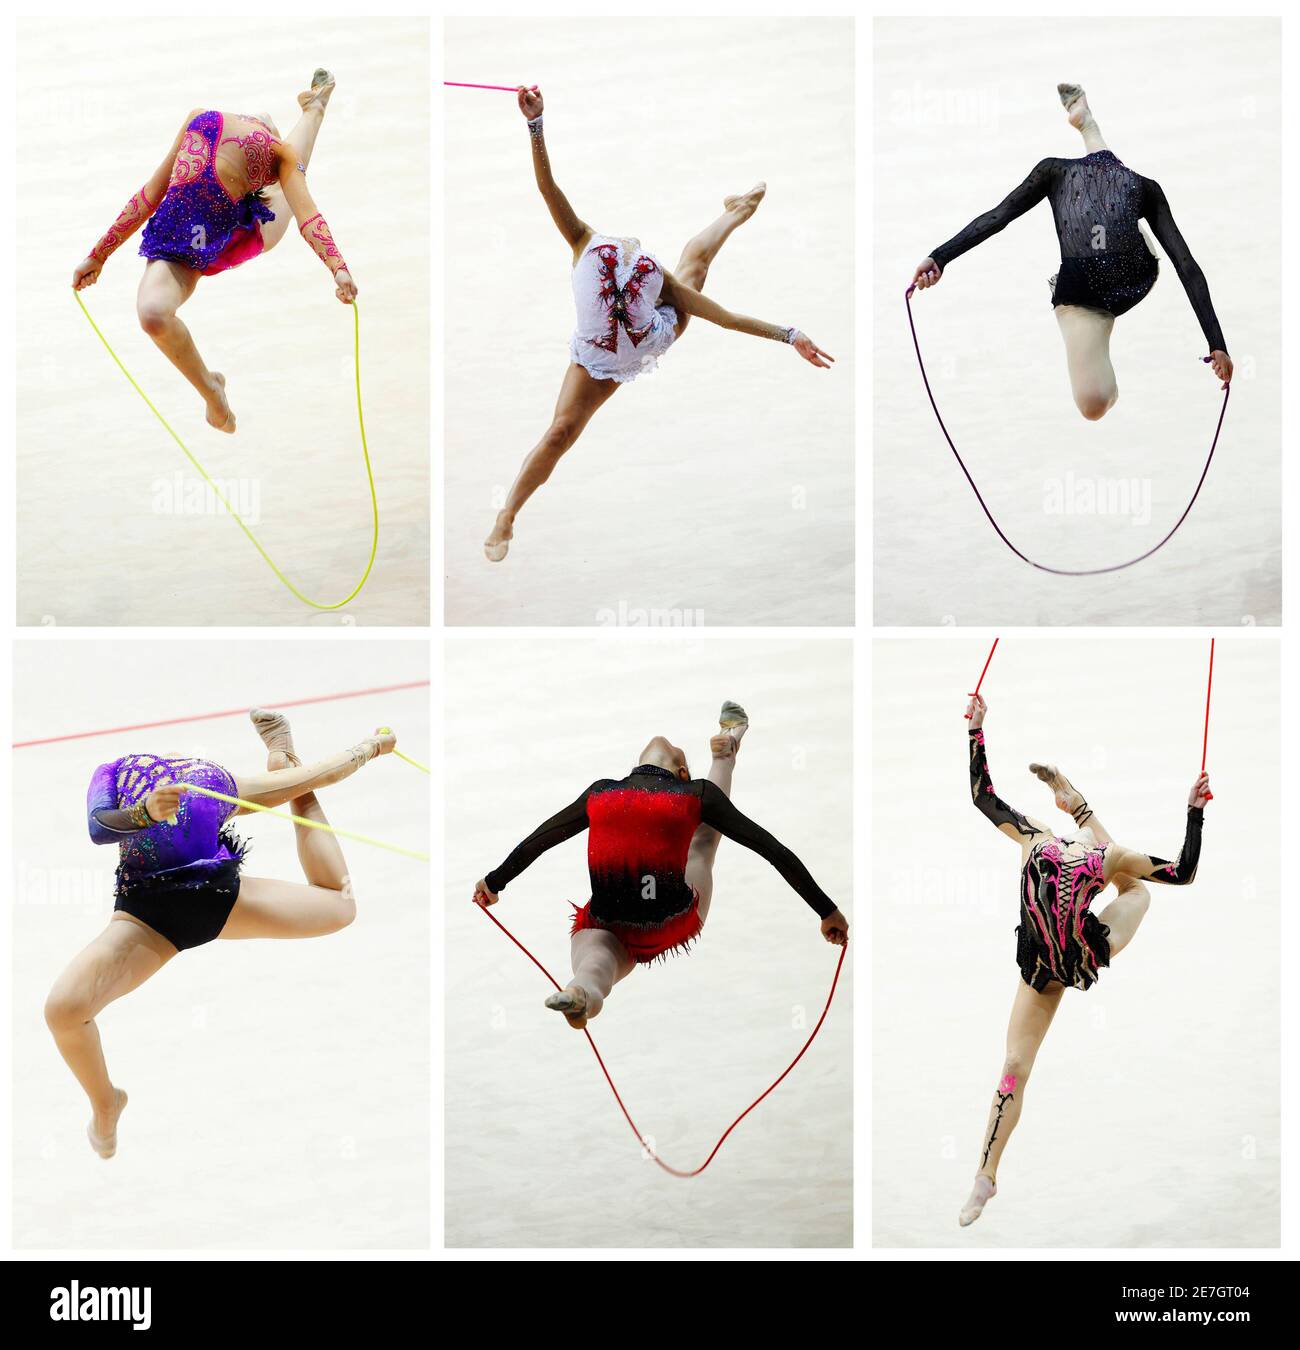 Rhythmische sportgymnastik seil Ausgeschnittene Stockfotos und -bilder -  Alamy